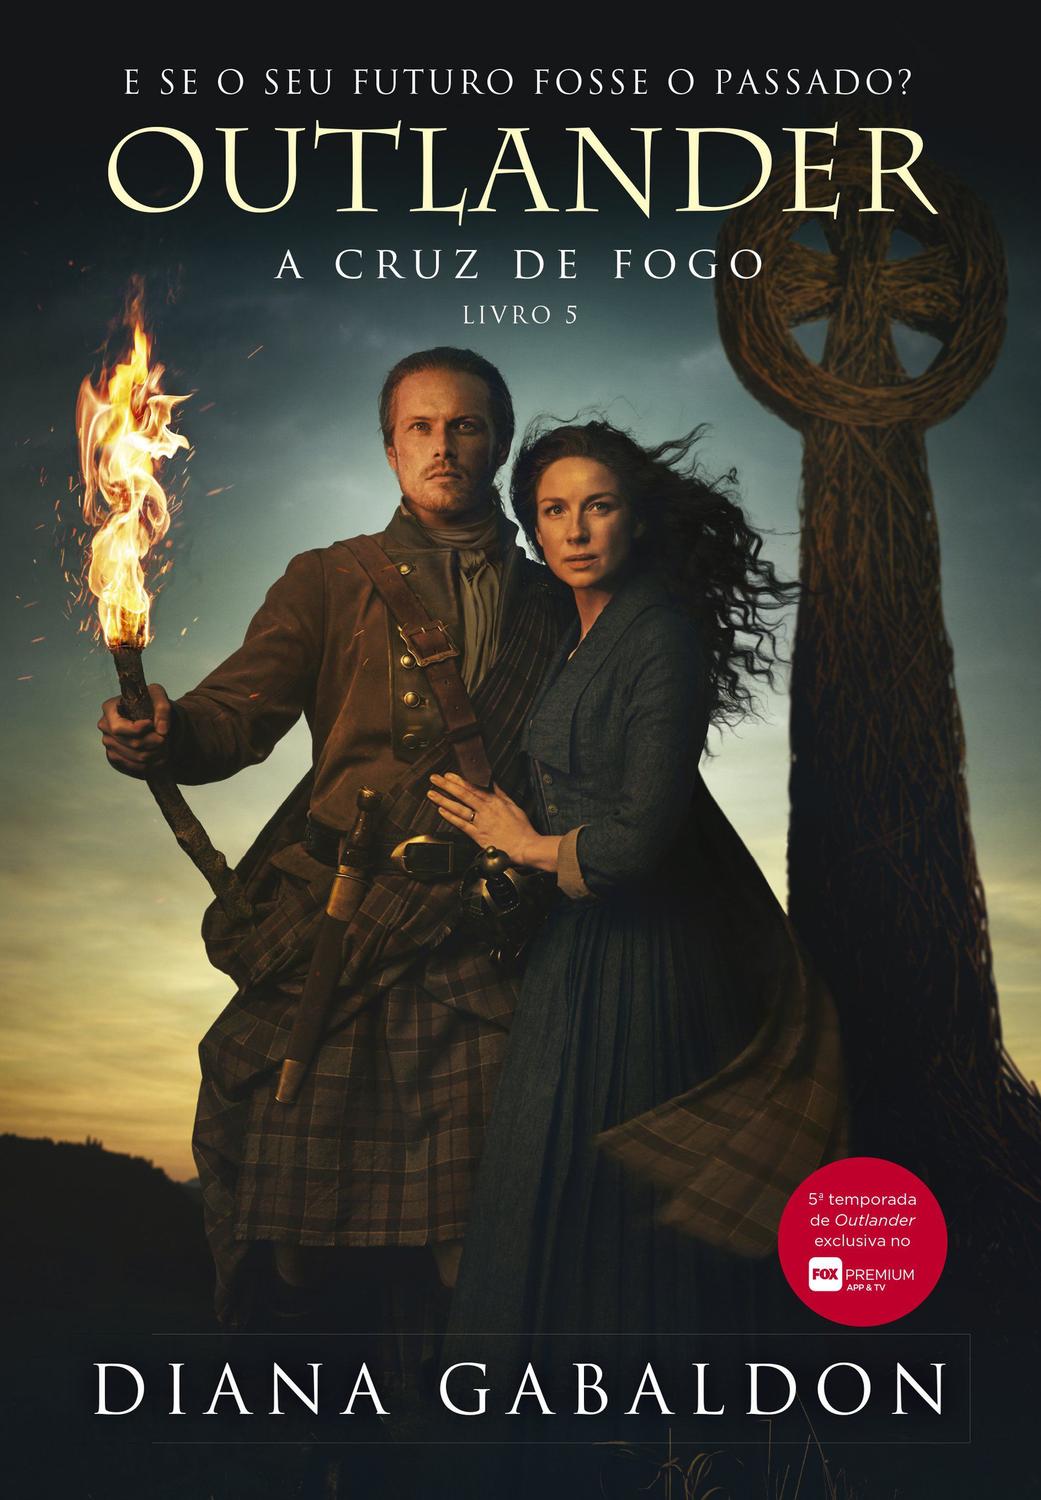 Download Livro - Outlander: a cruz de fogo - Livro 5 - Livros de ...